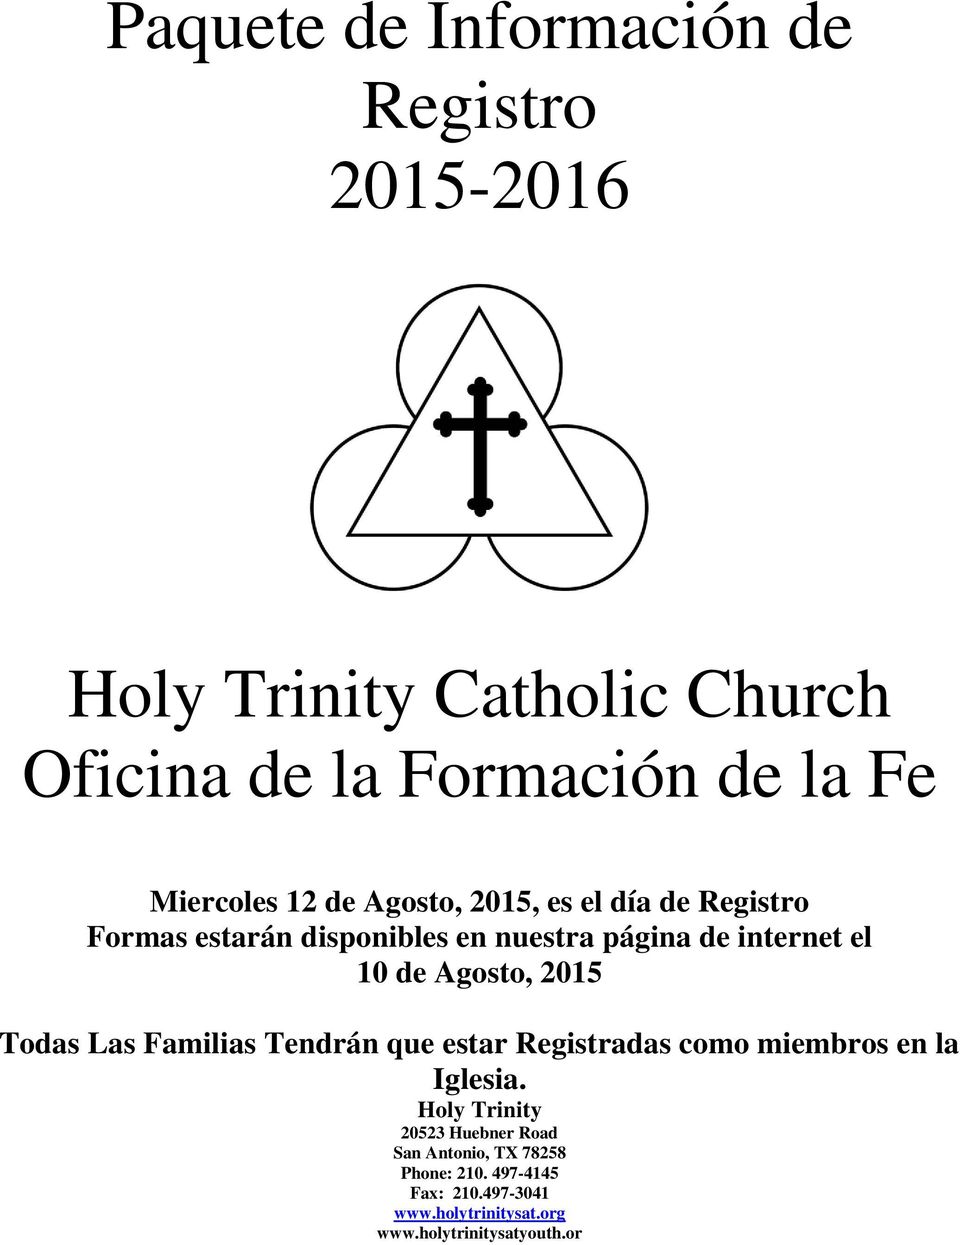 de Agosto, 2015 Todas Las Familias Tendrán que estar Registradas como miembros en la Iglesia.